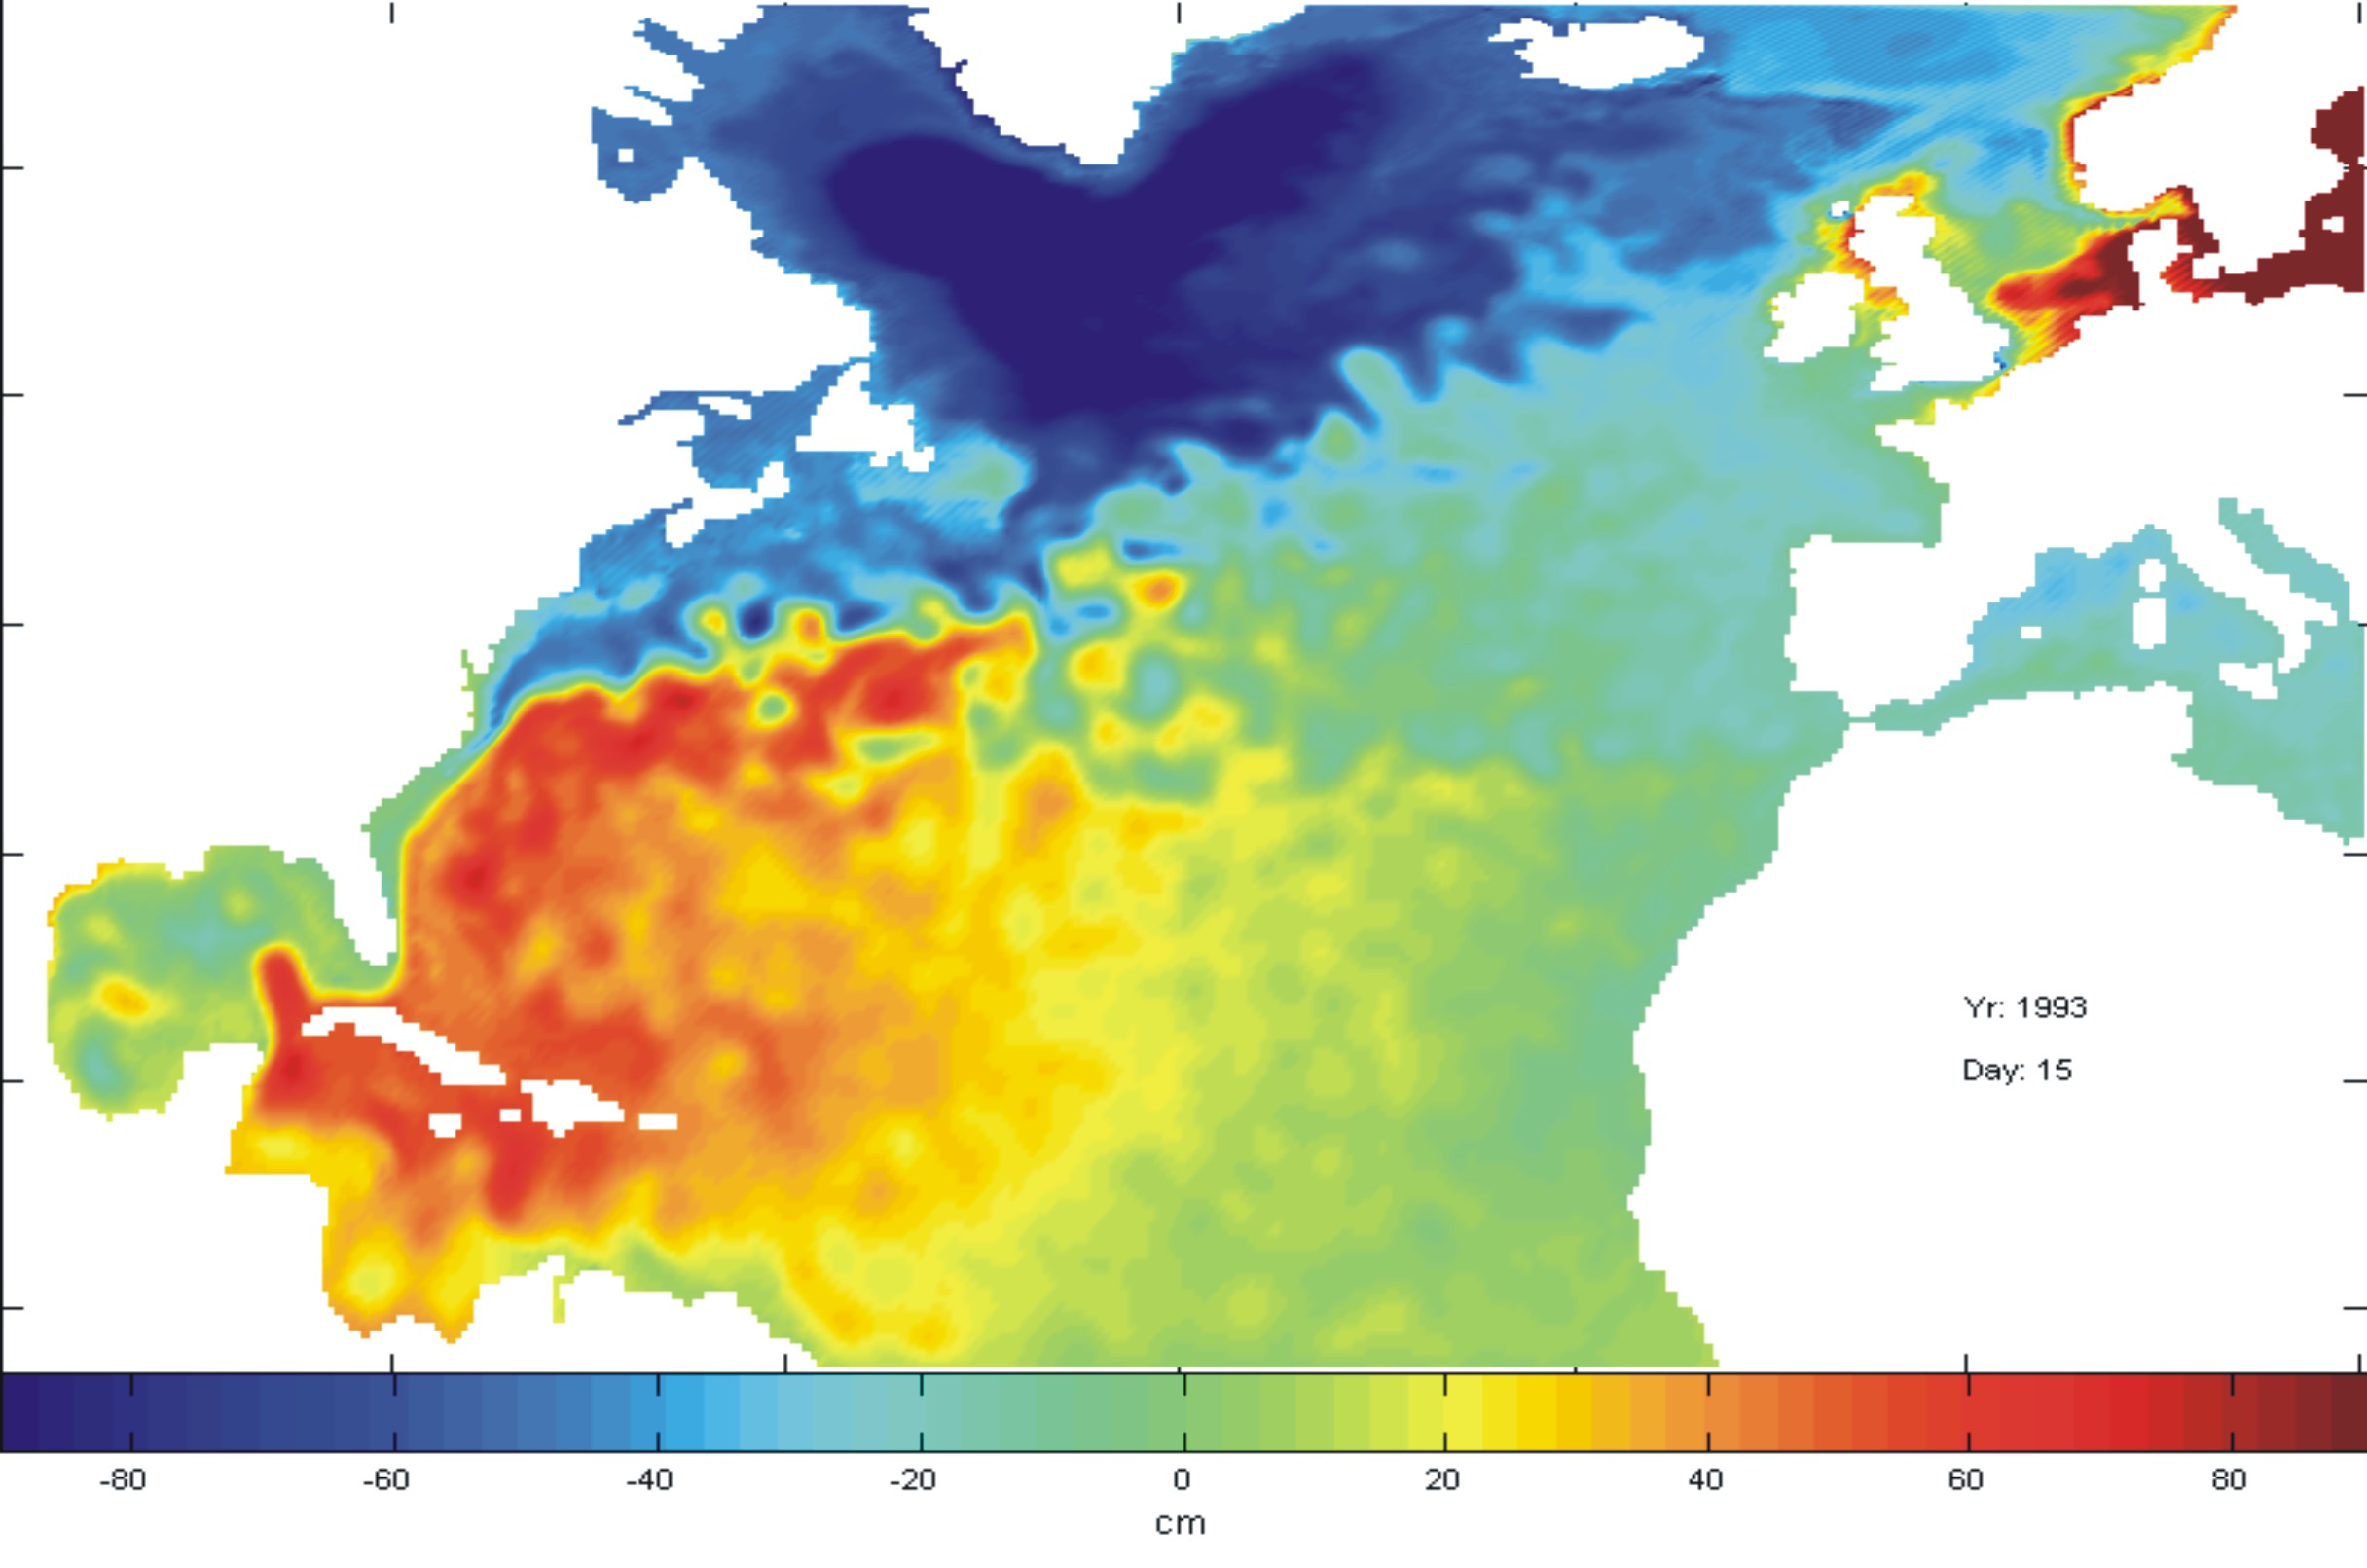 Model simulations of North Atlantic Ocean